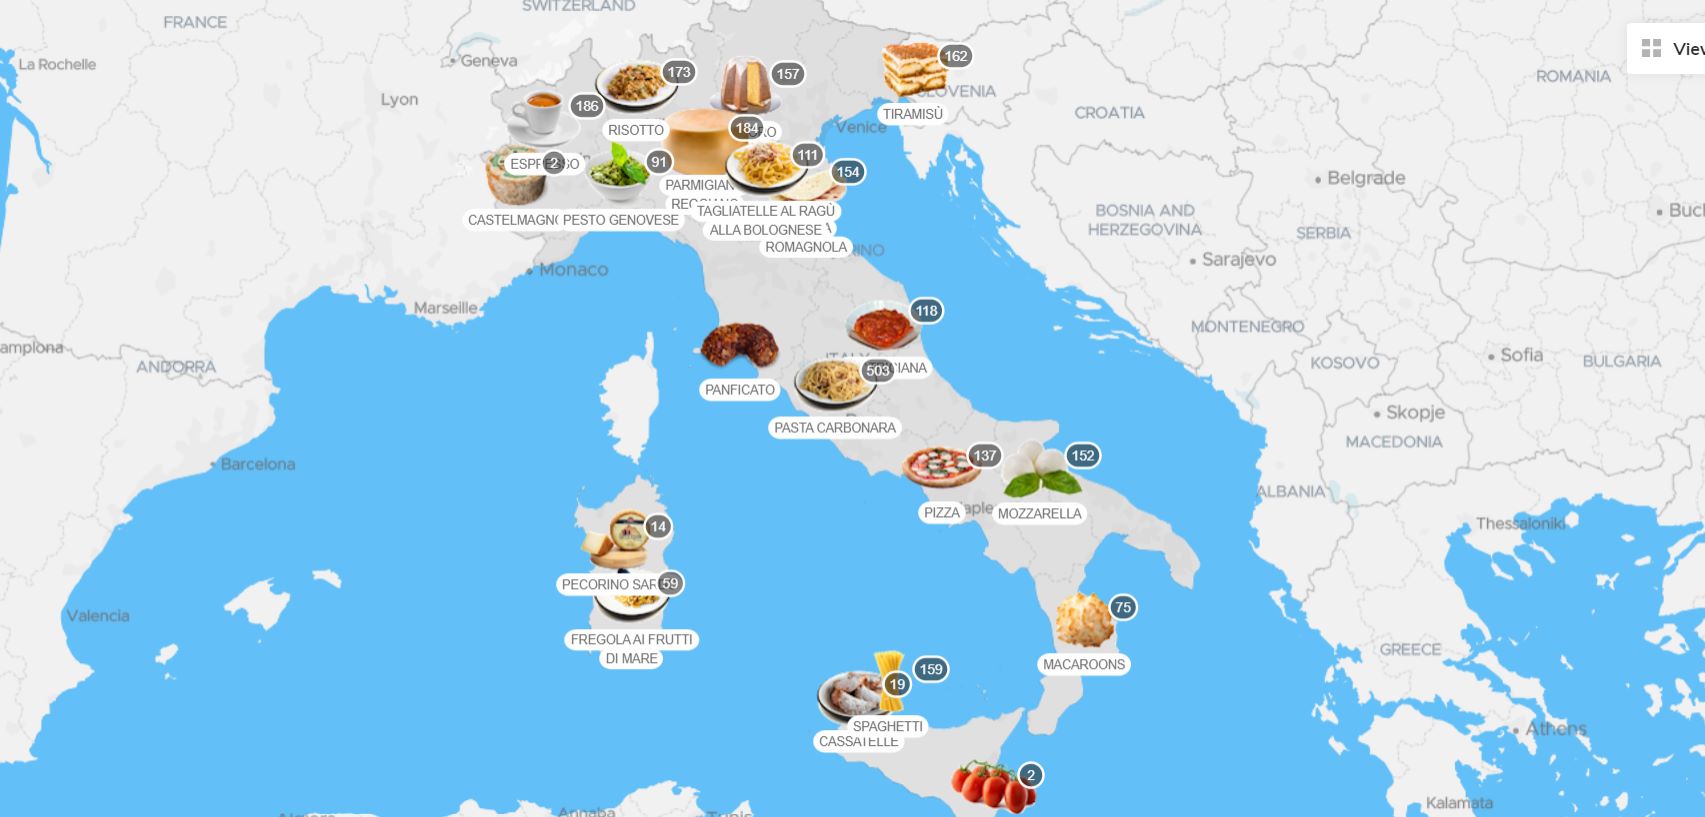 Per TasteAtlas l’Italia ha le città dove si mangia meglio al mondo. Ecco nomi e motivi…